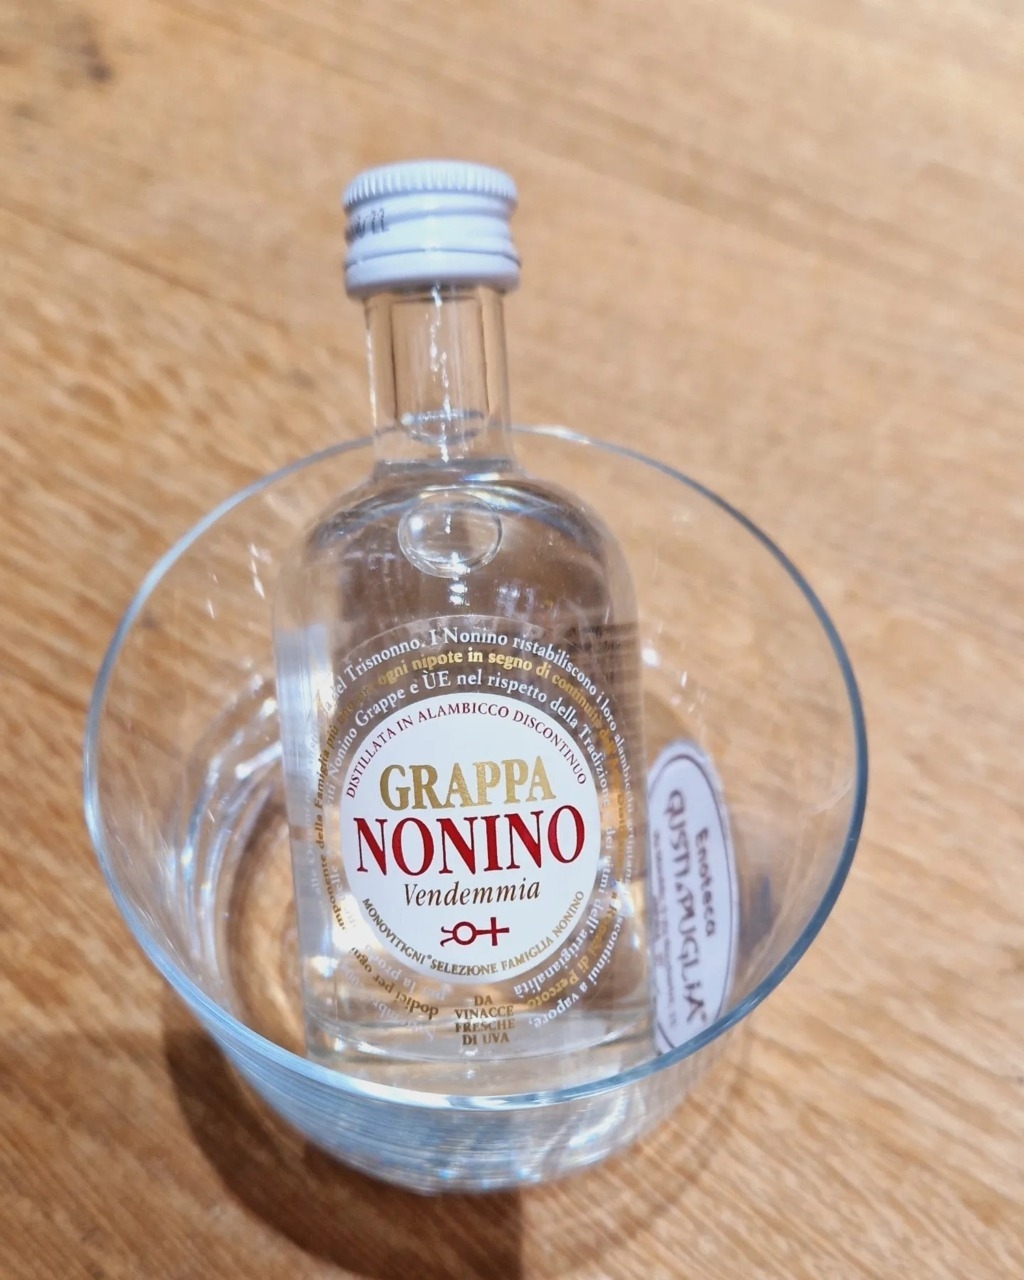 Nonino Grappa Bianca 50ml Grappa Distillerie Nonino Vendemmia